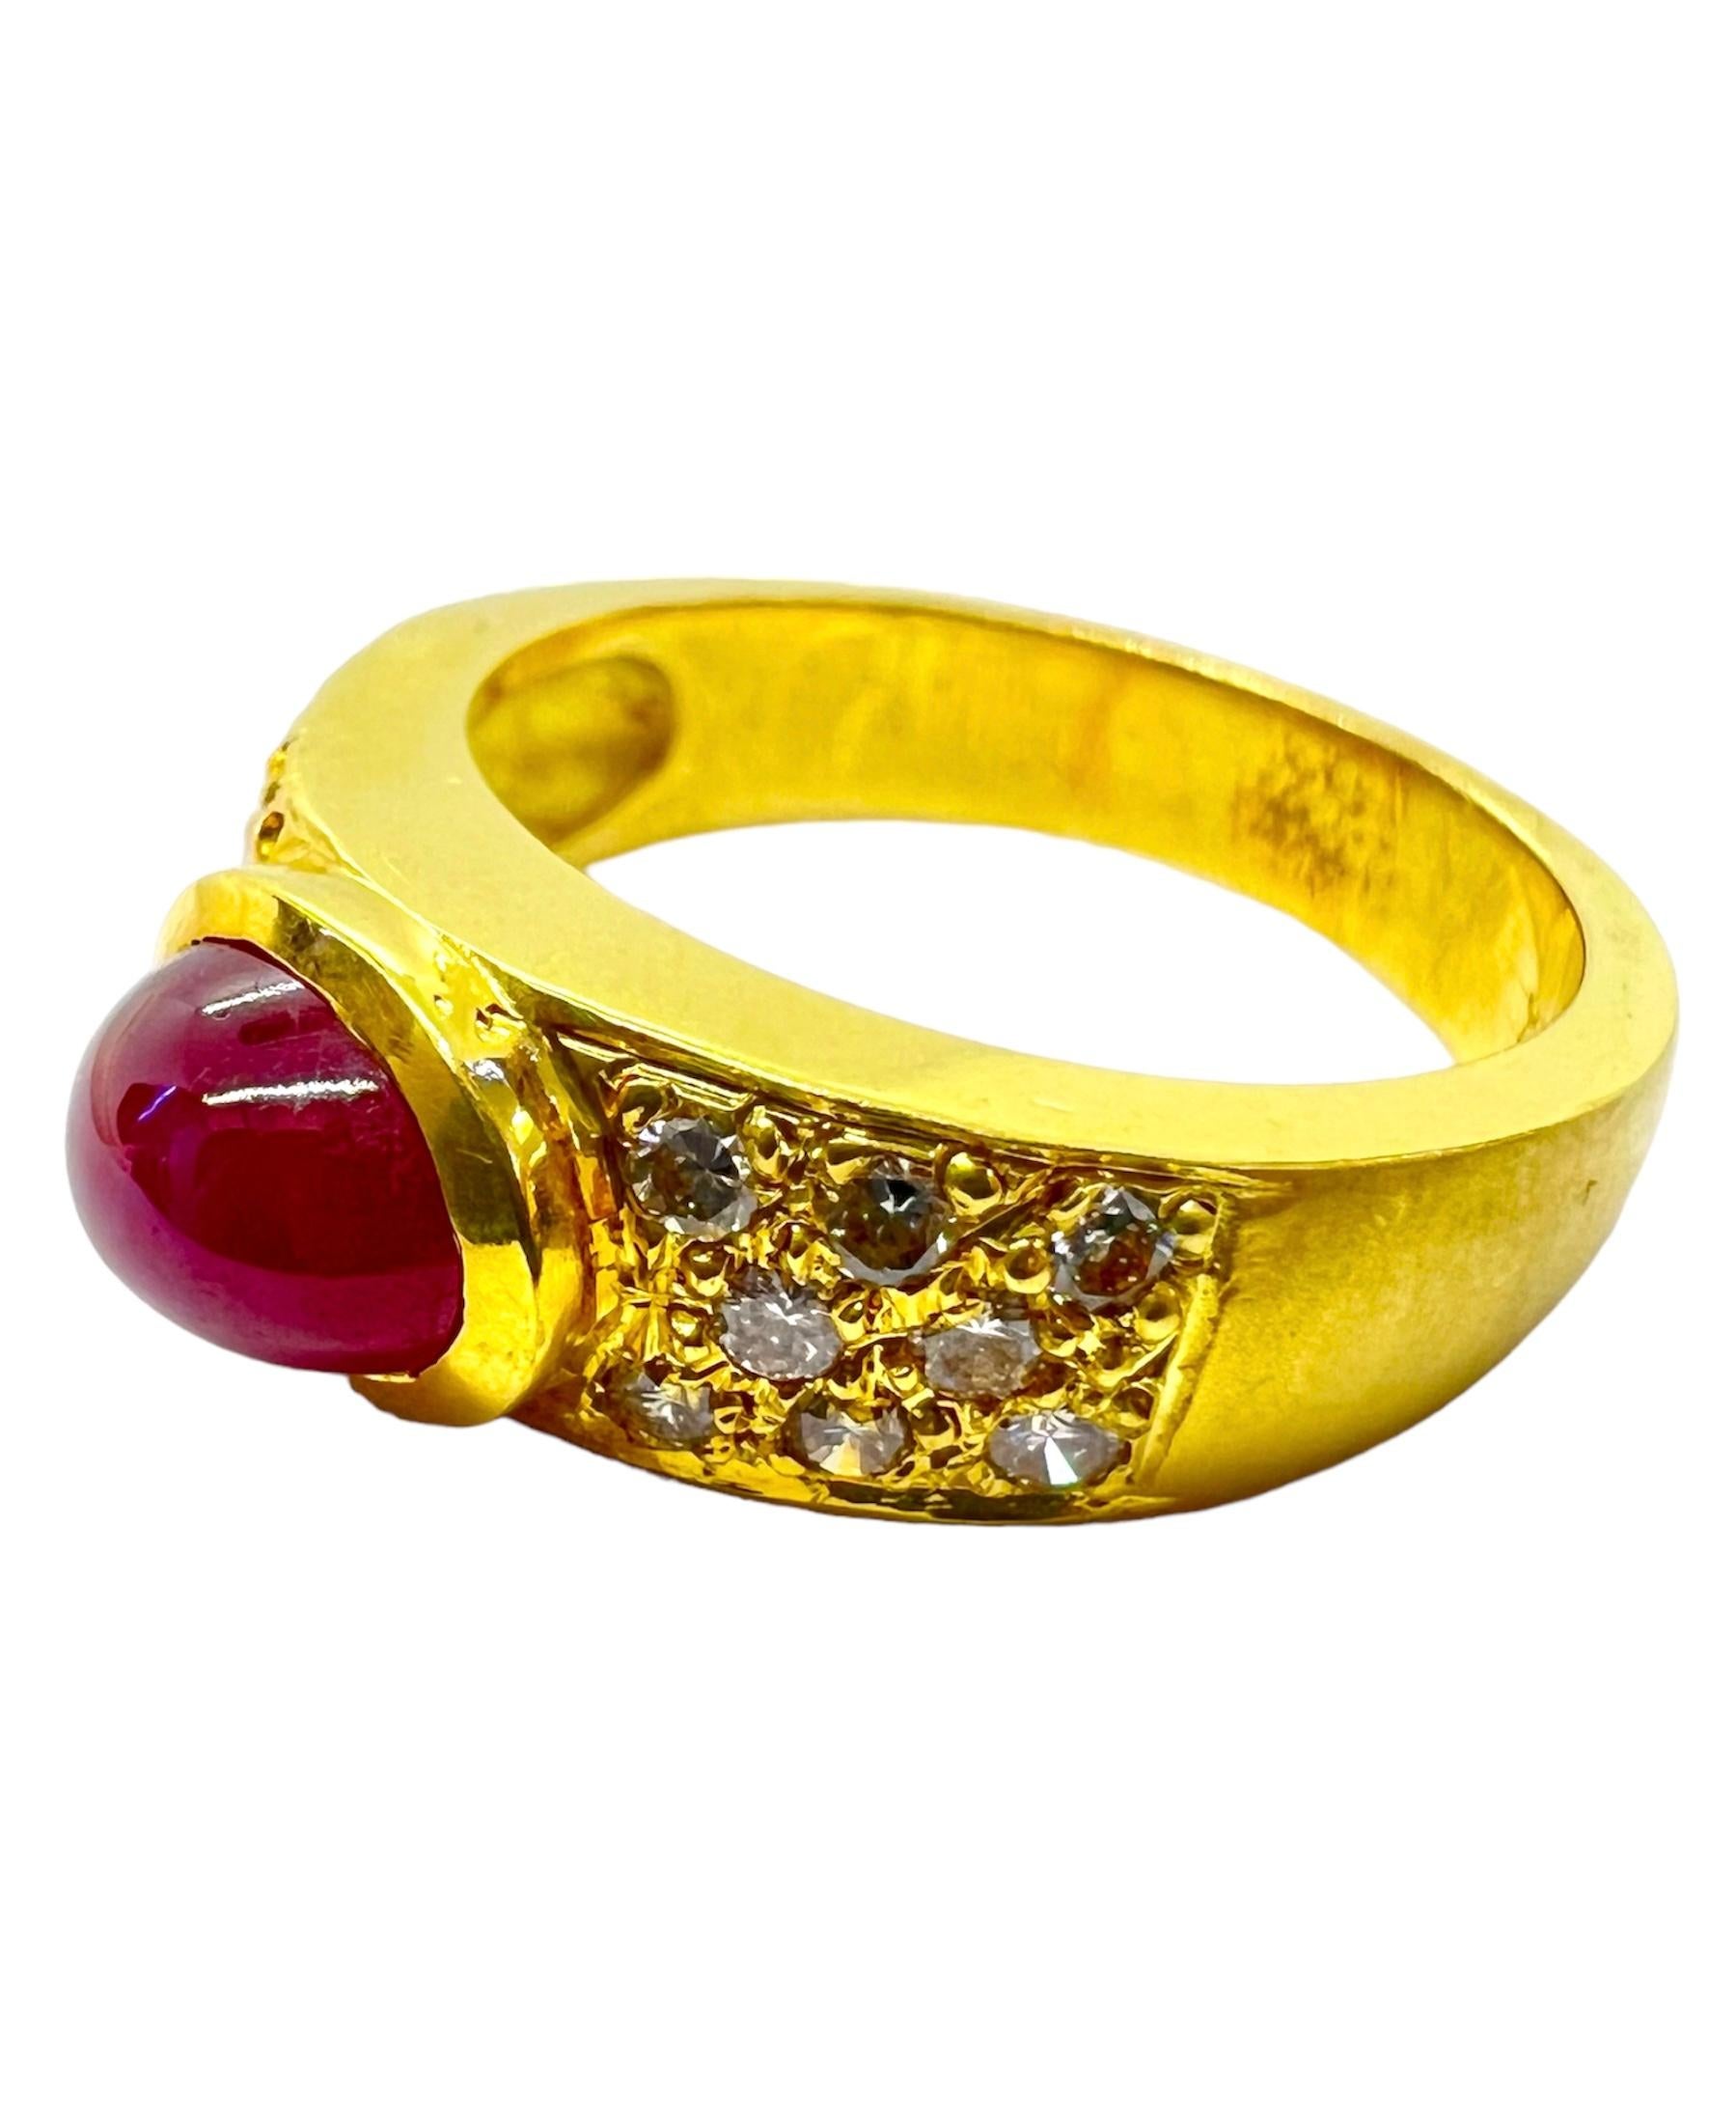 Bague en or jaune 18K avec rubis et diamants.

Sophia D by Joseph Dardashti Ltd est connue dans le monde entier depuis 35 ans et s'inspire du design classique de l'Art déco qui fusionne avec les techniques de fabrication modernes.